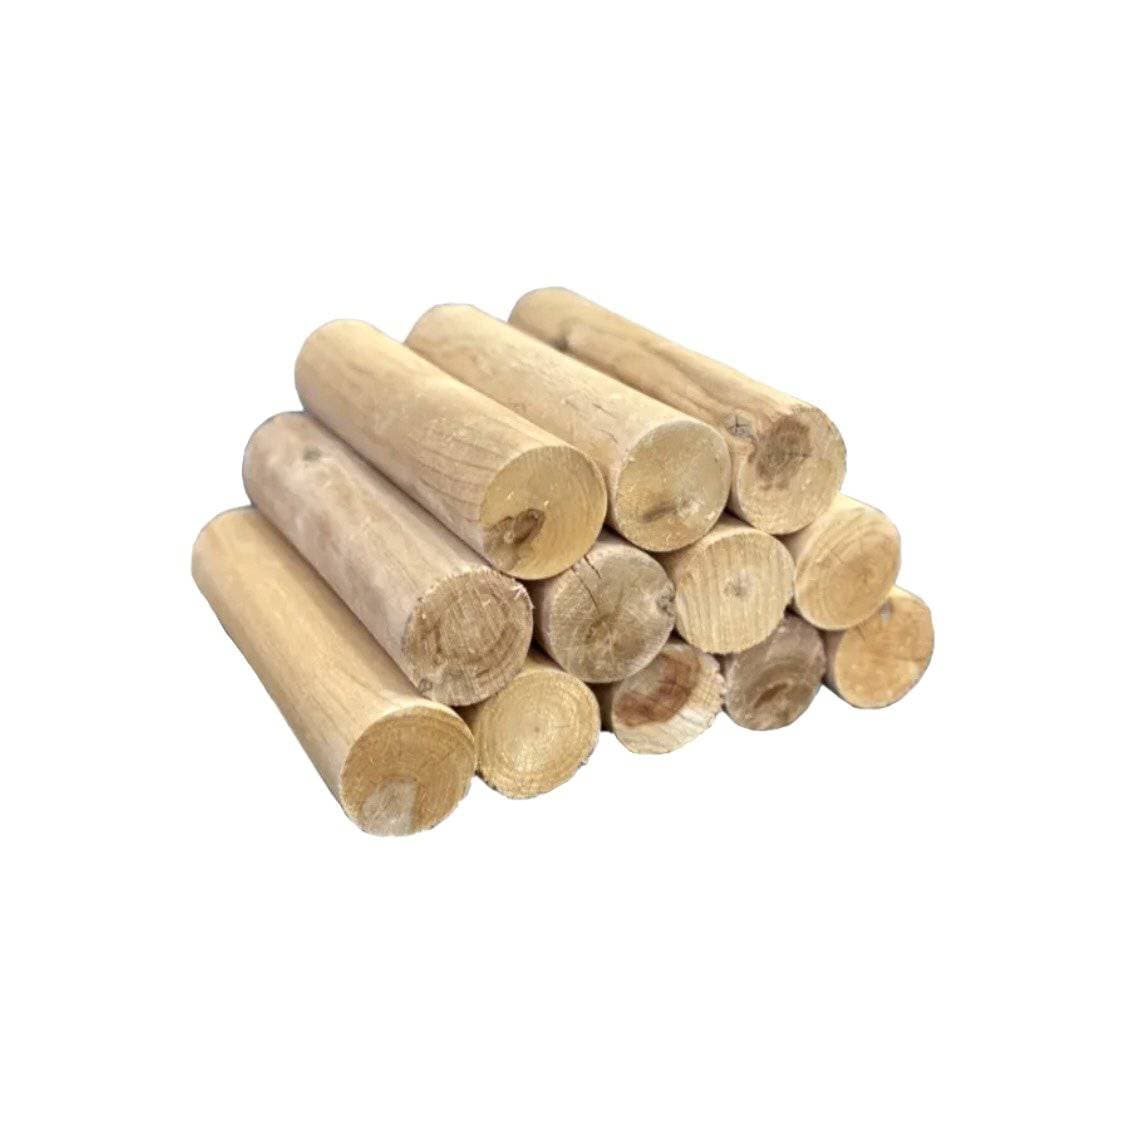 Kiln-dried Birch logs 10kg - Globaltic